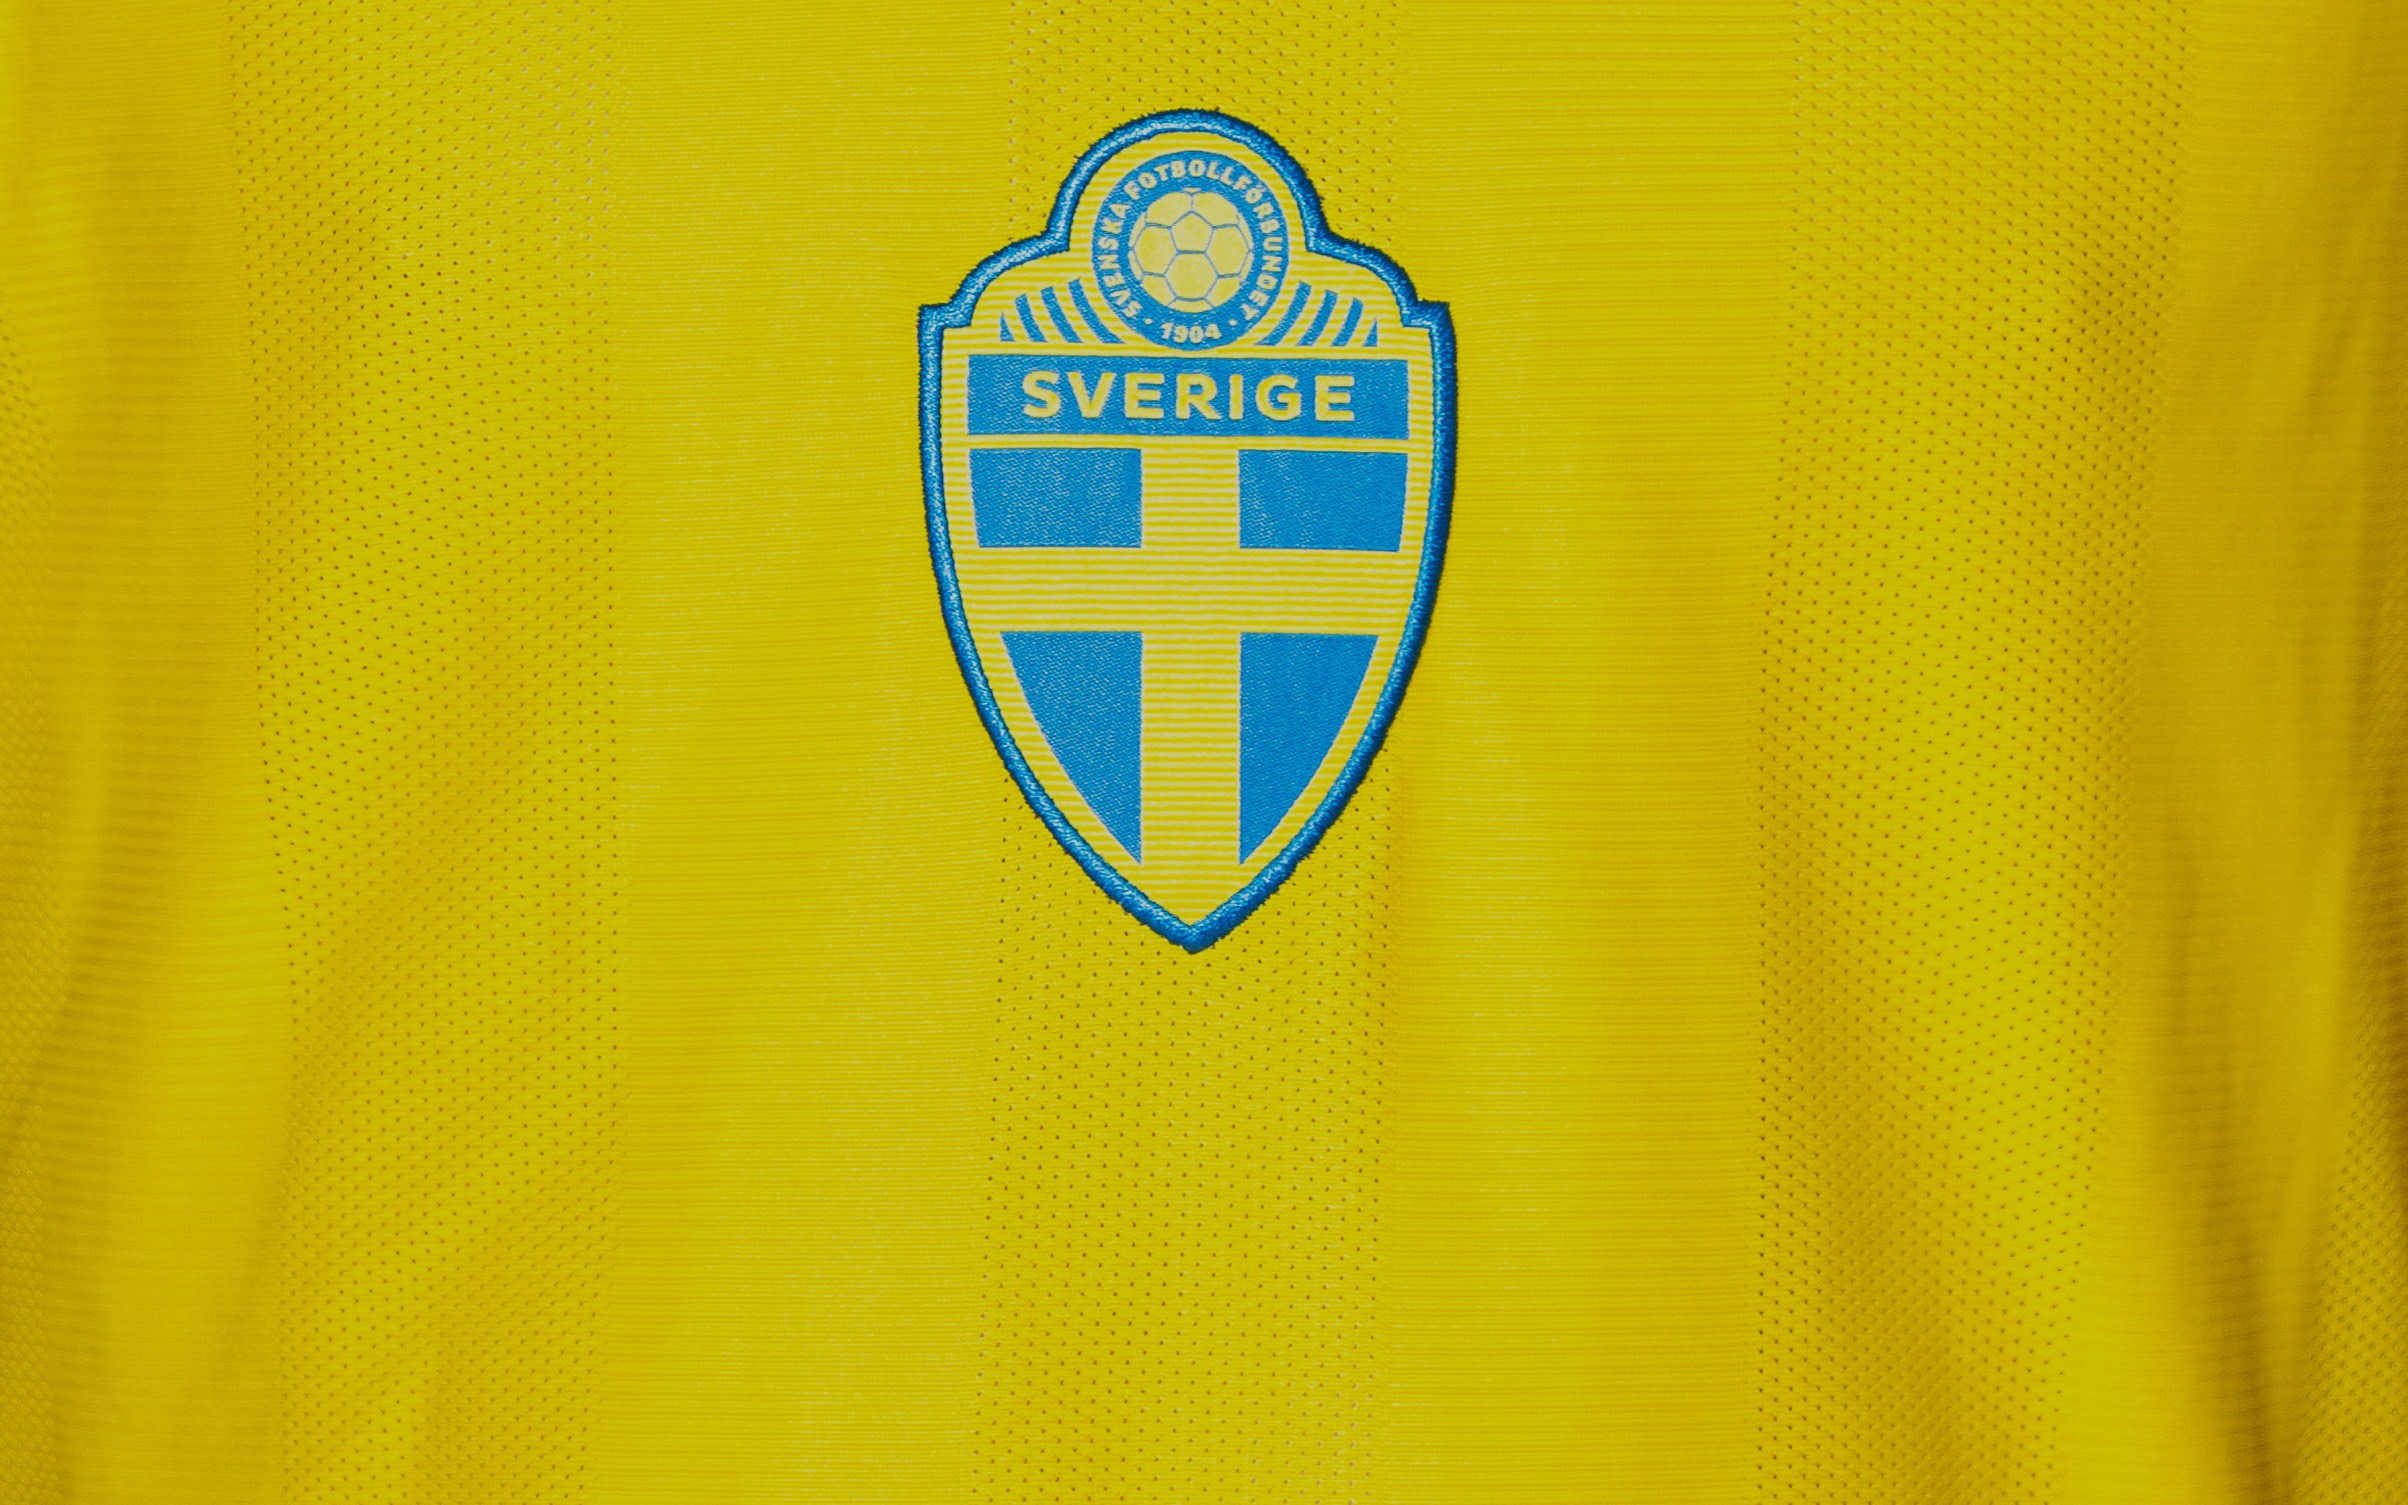 Tietoevry och SvFF gör det möjligt att följa de svenska fotbollslandslagen på plats 